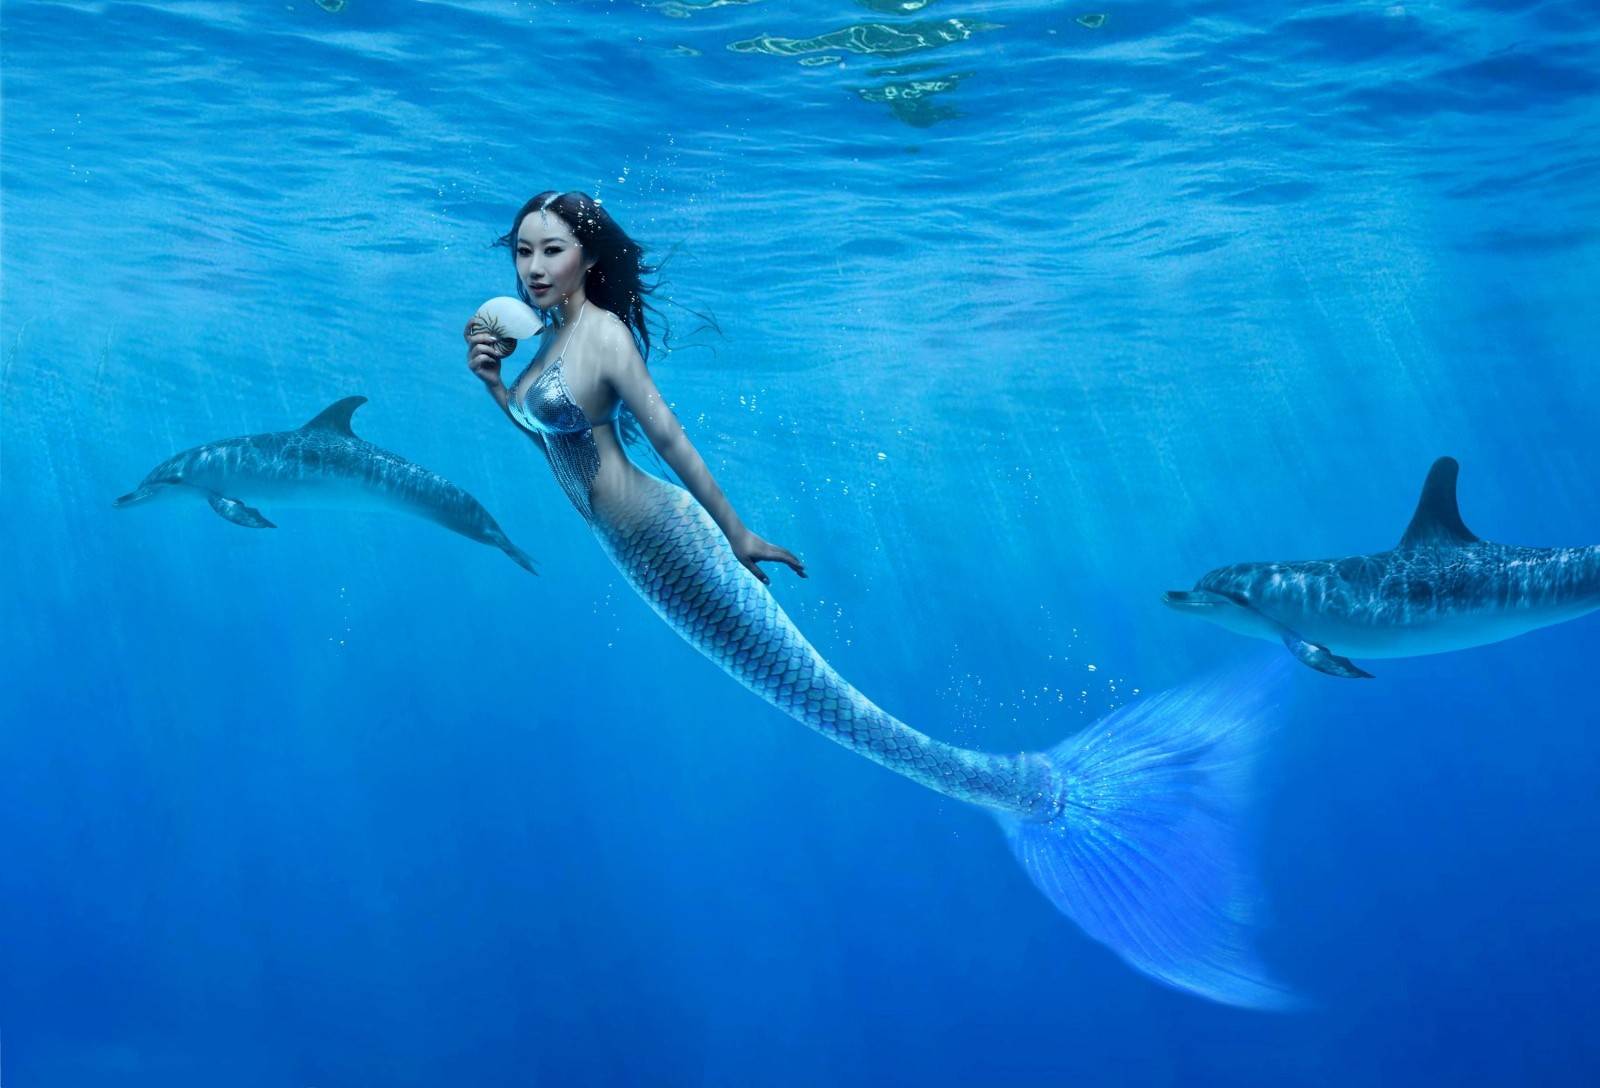 Real Mermaid Wallpapers - Top Free Real Mermaid Backgrounds ...